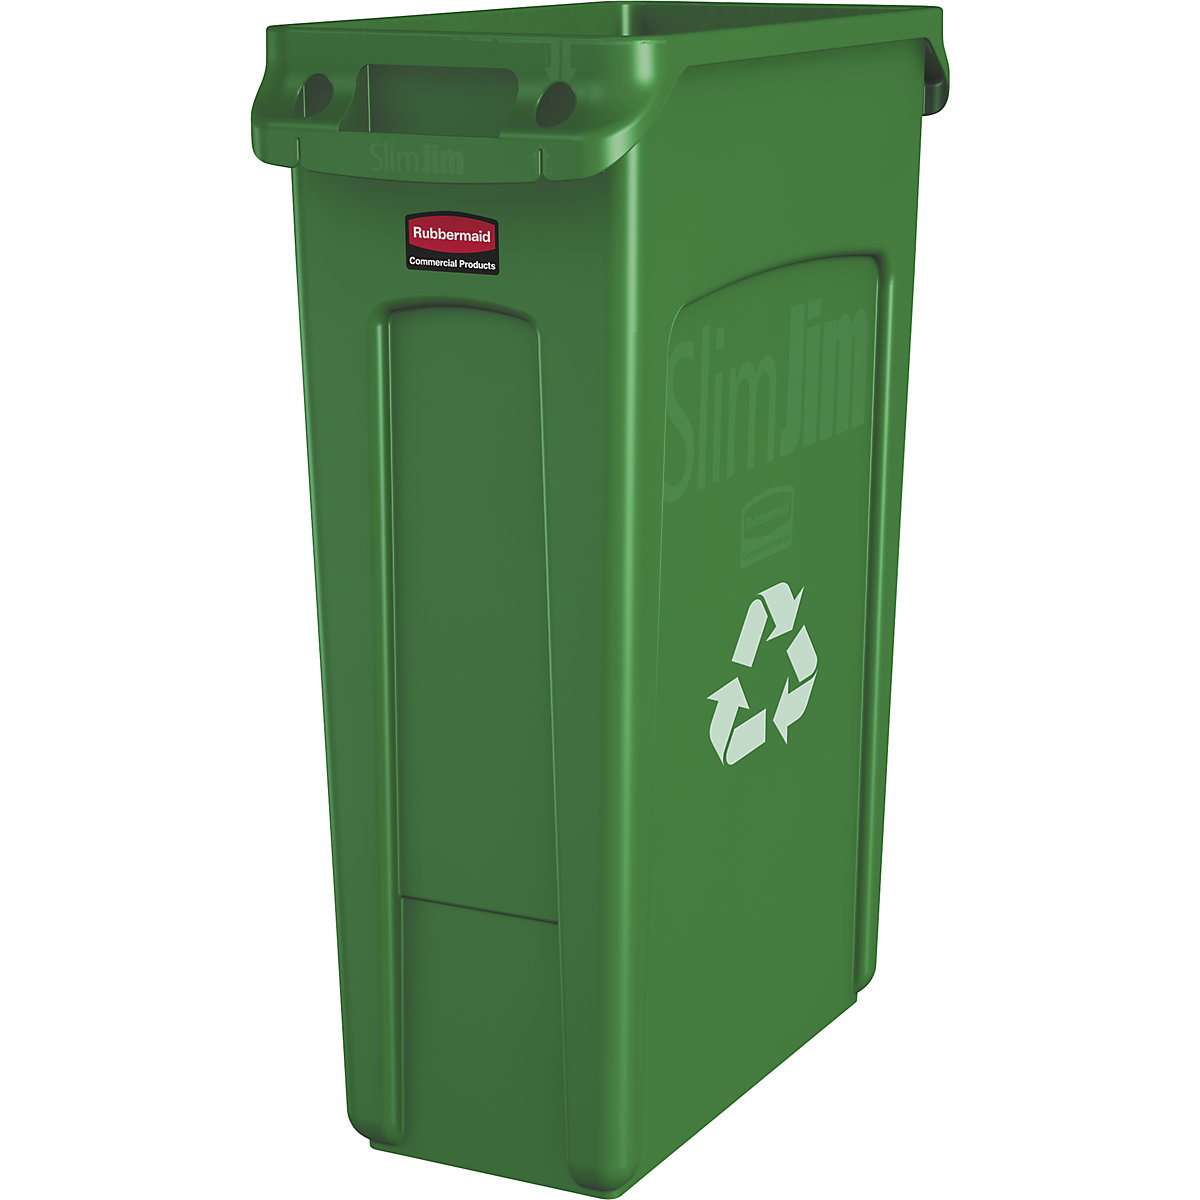 Contenitore per la raccolta differenziata/cestino per rifiuti SLIM JIM® – Rubbermaid, capacità 87 l, con canali di aerazione, verde con simbolo di riciclaggio, a partire da 3 pz.-13